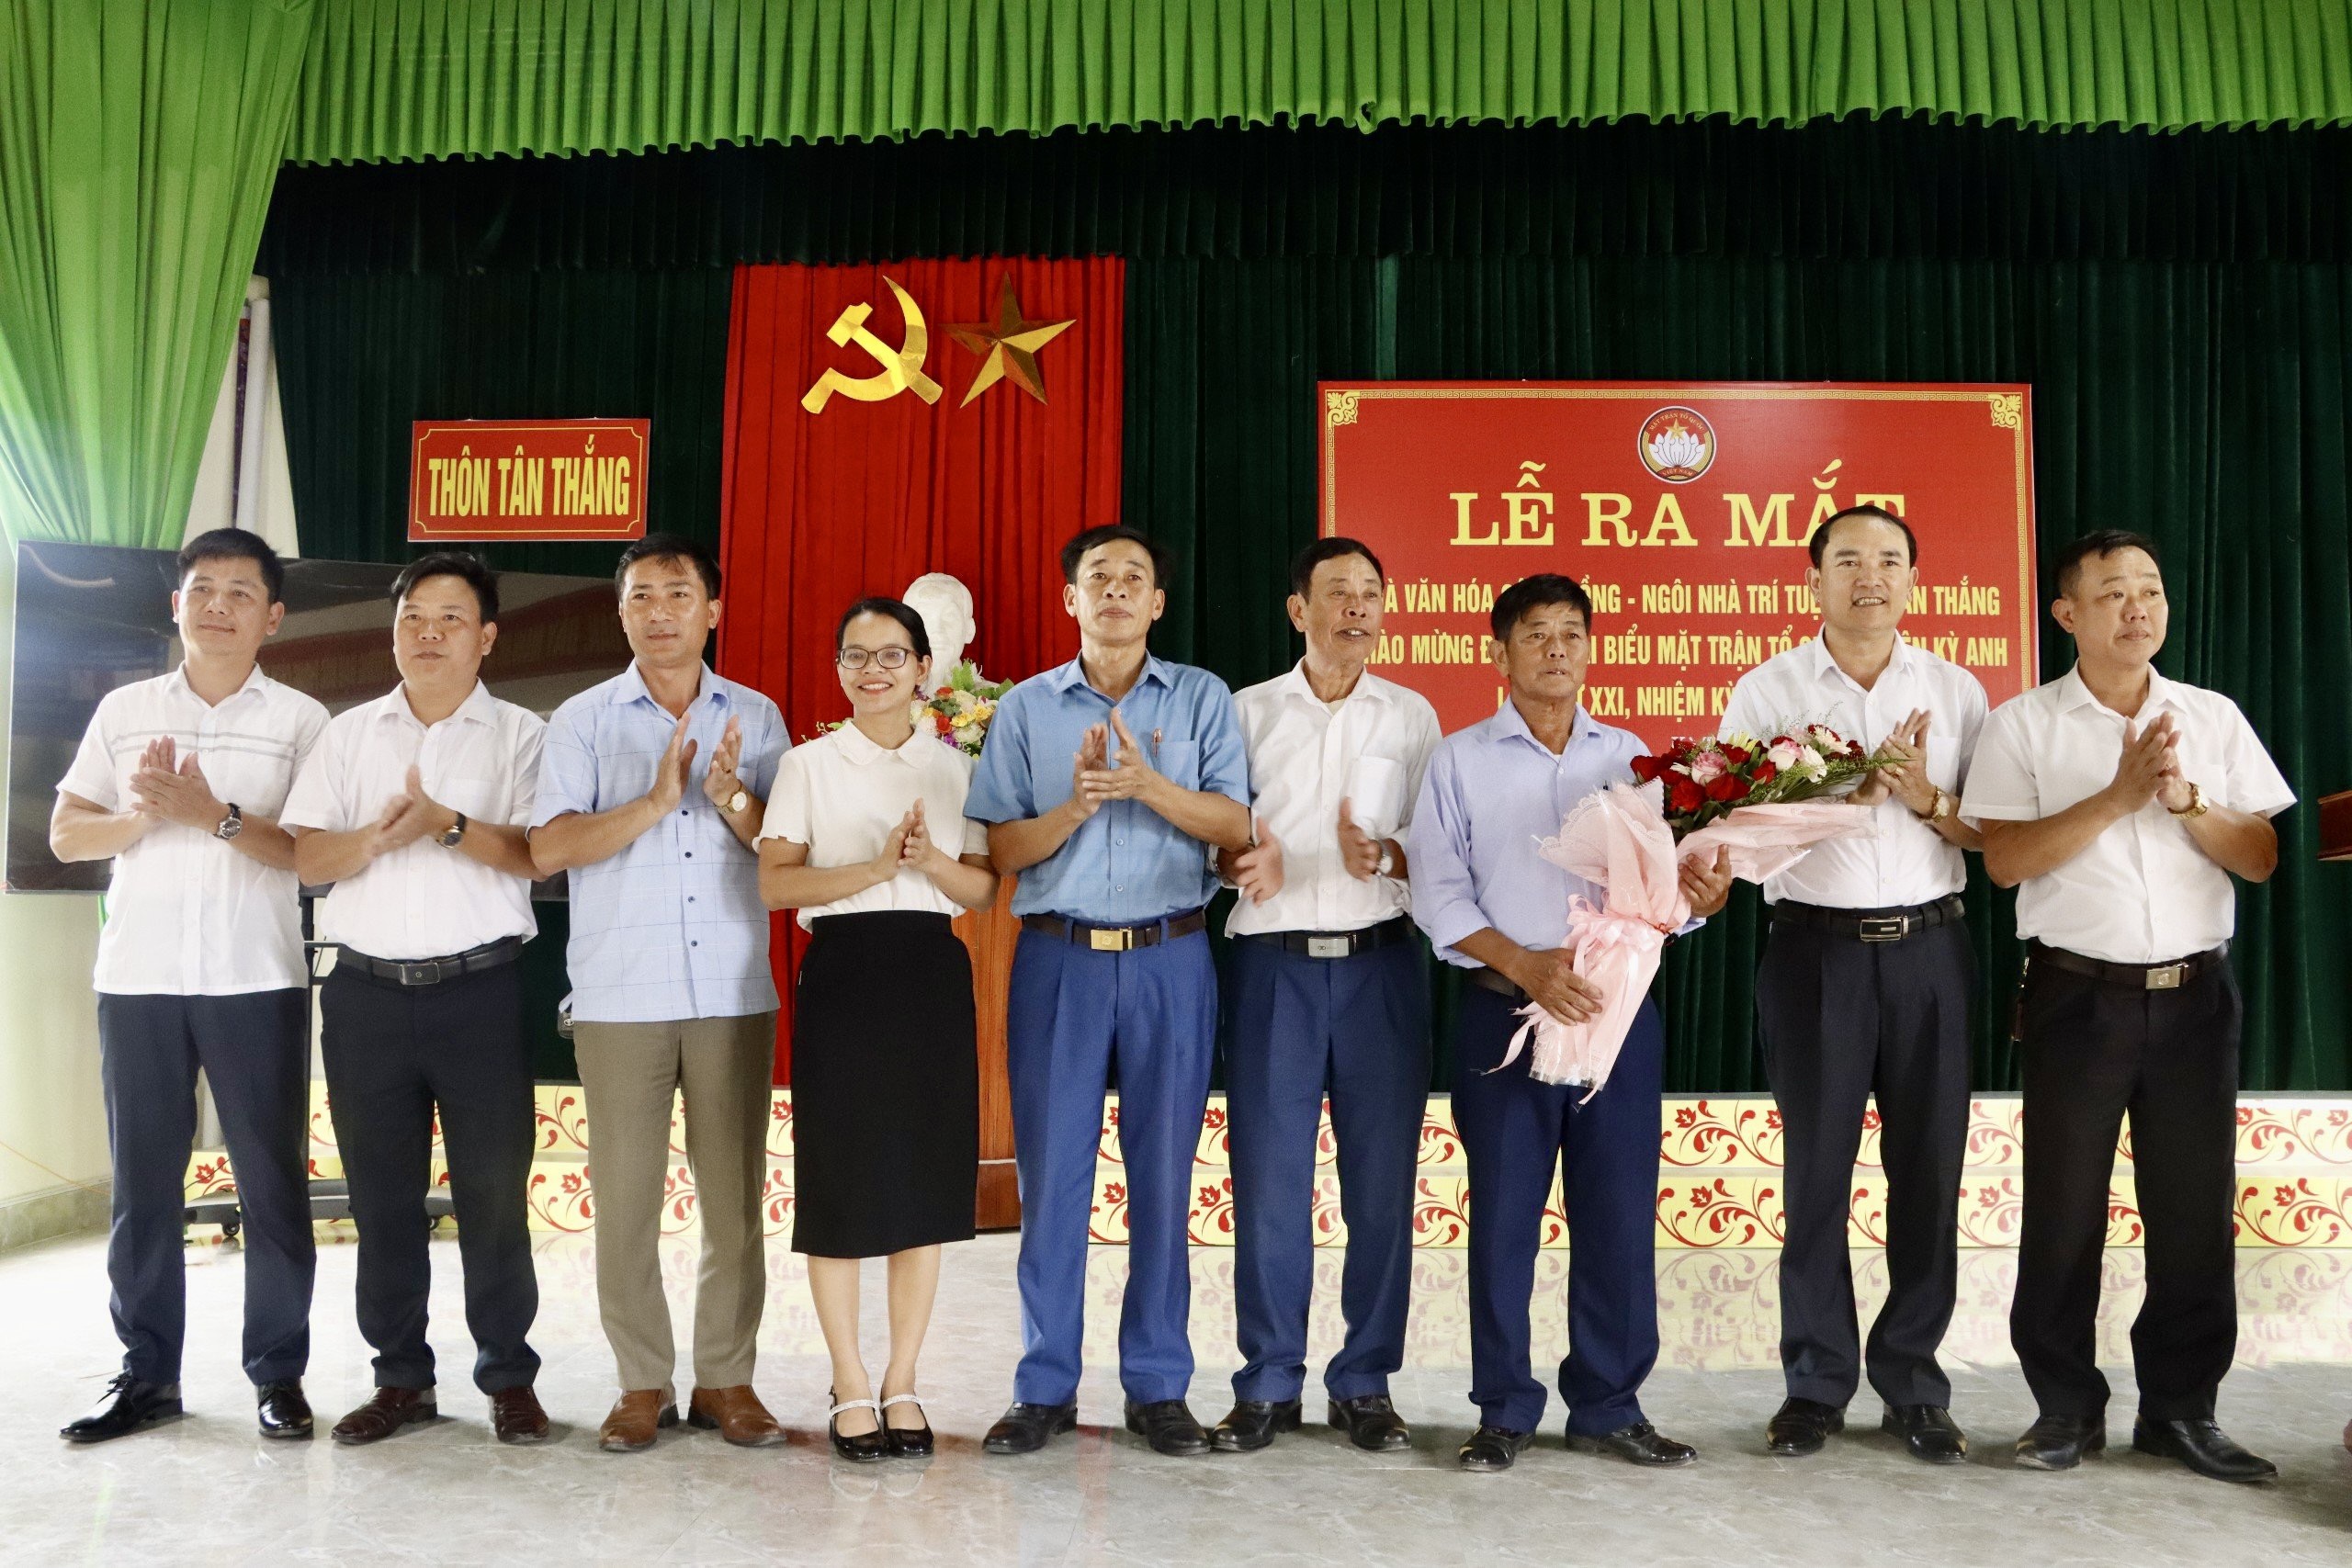 Lễ ra mắt hoạt động Nhà văn hoá cộng đồng  - “Ngôi nhà trí tuệ” thôn Tân Thắng